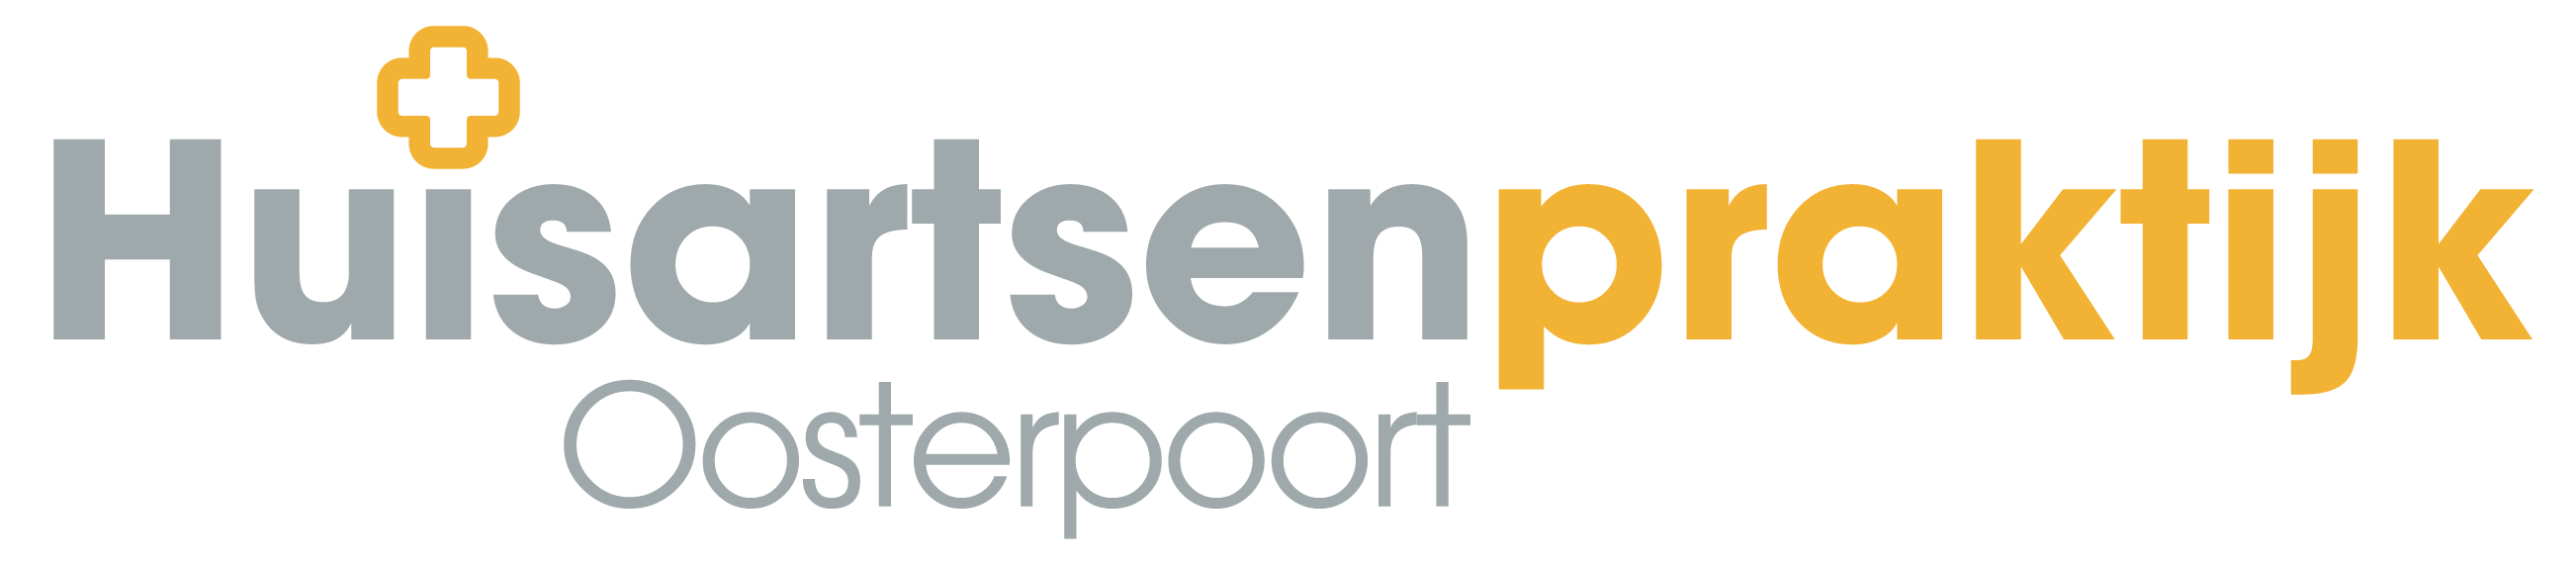 Huisartsenpraktijk Oosterpoort logo